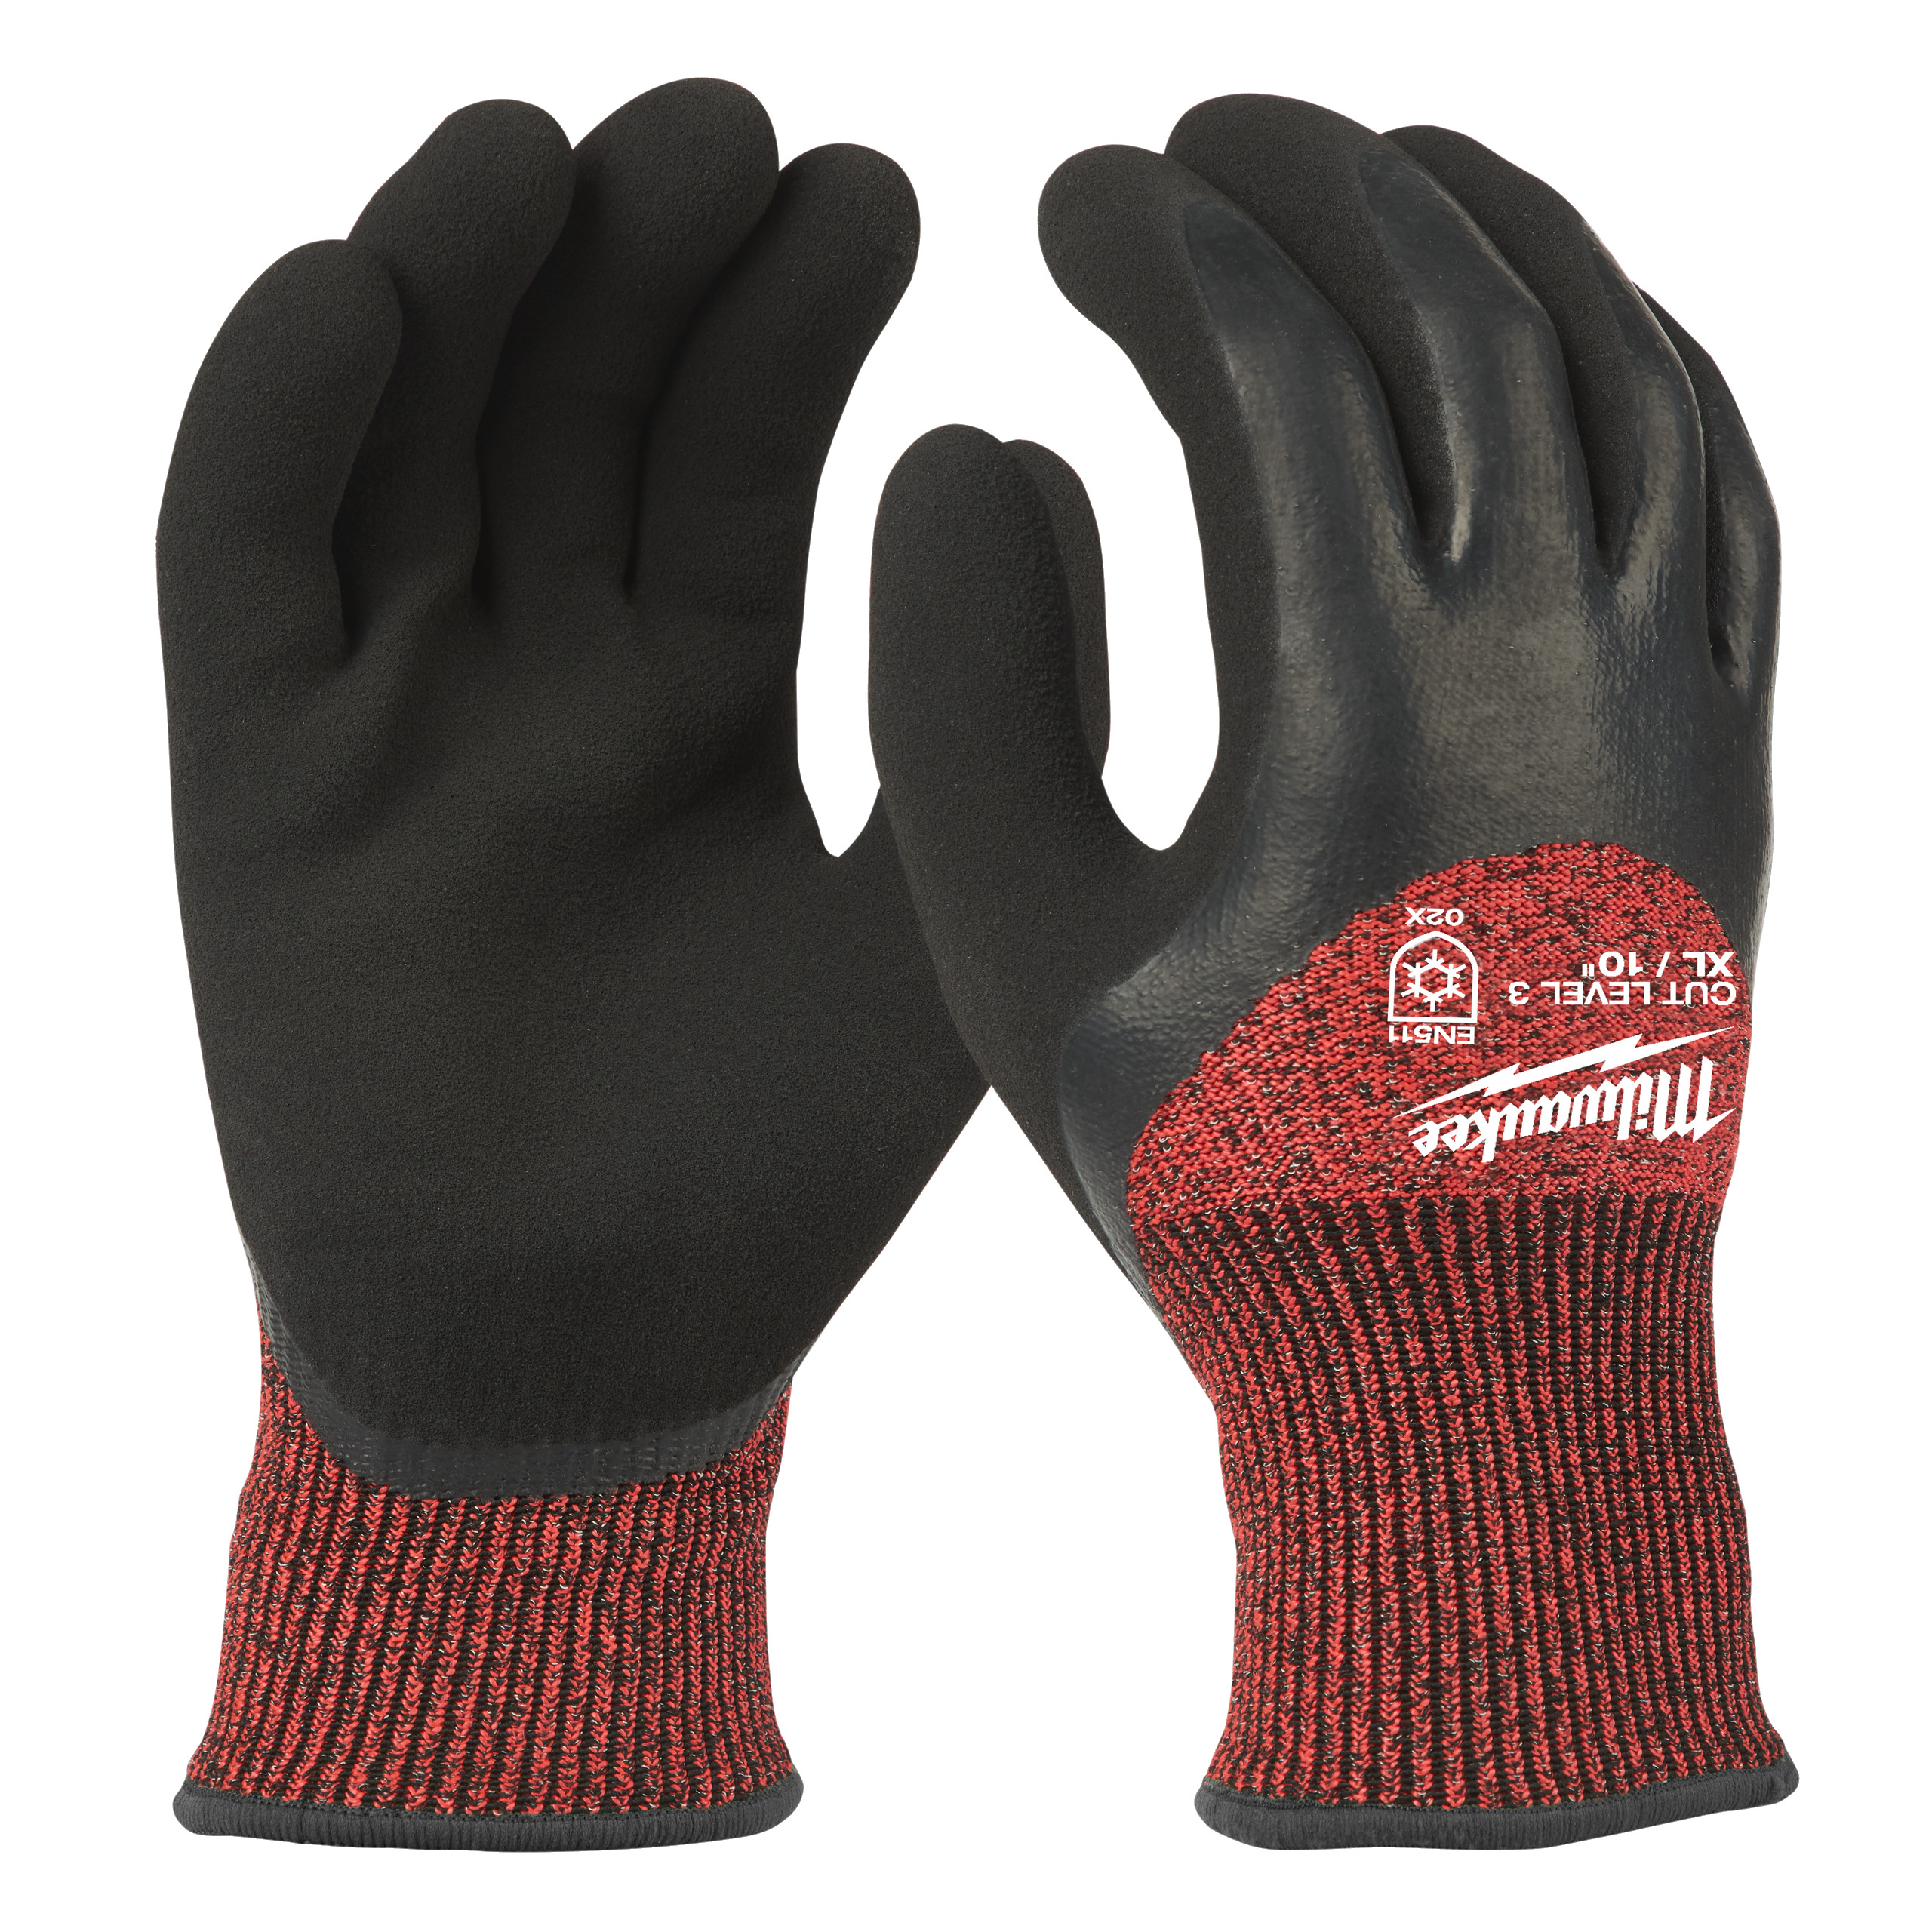 Zimní rukavice odolné proti proříznutí Stupeň 3 -  vel XL/10 - 1ks